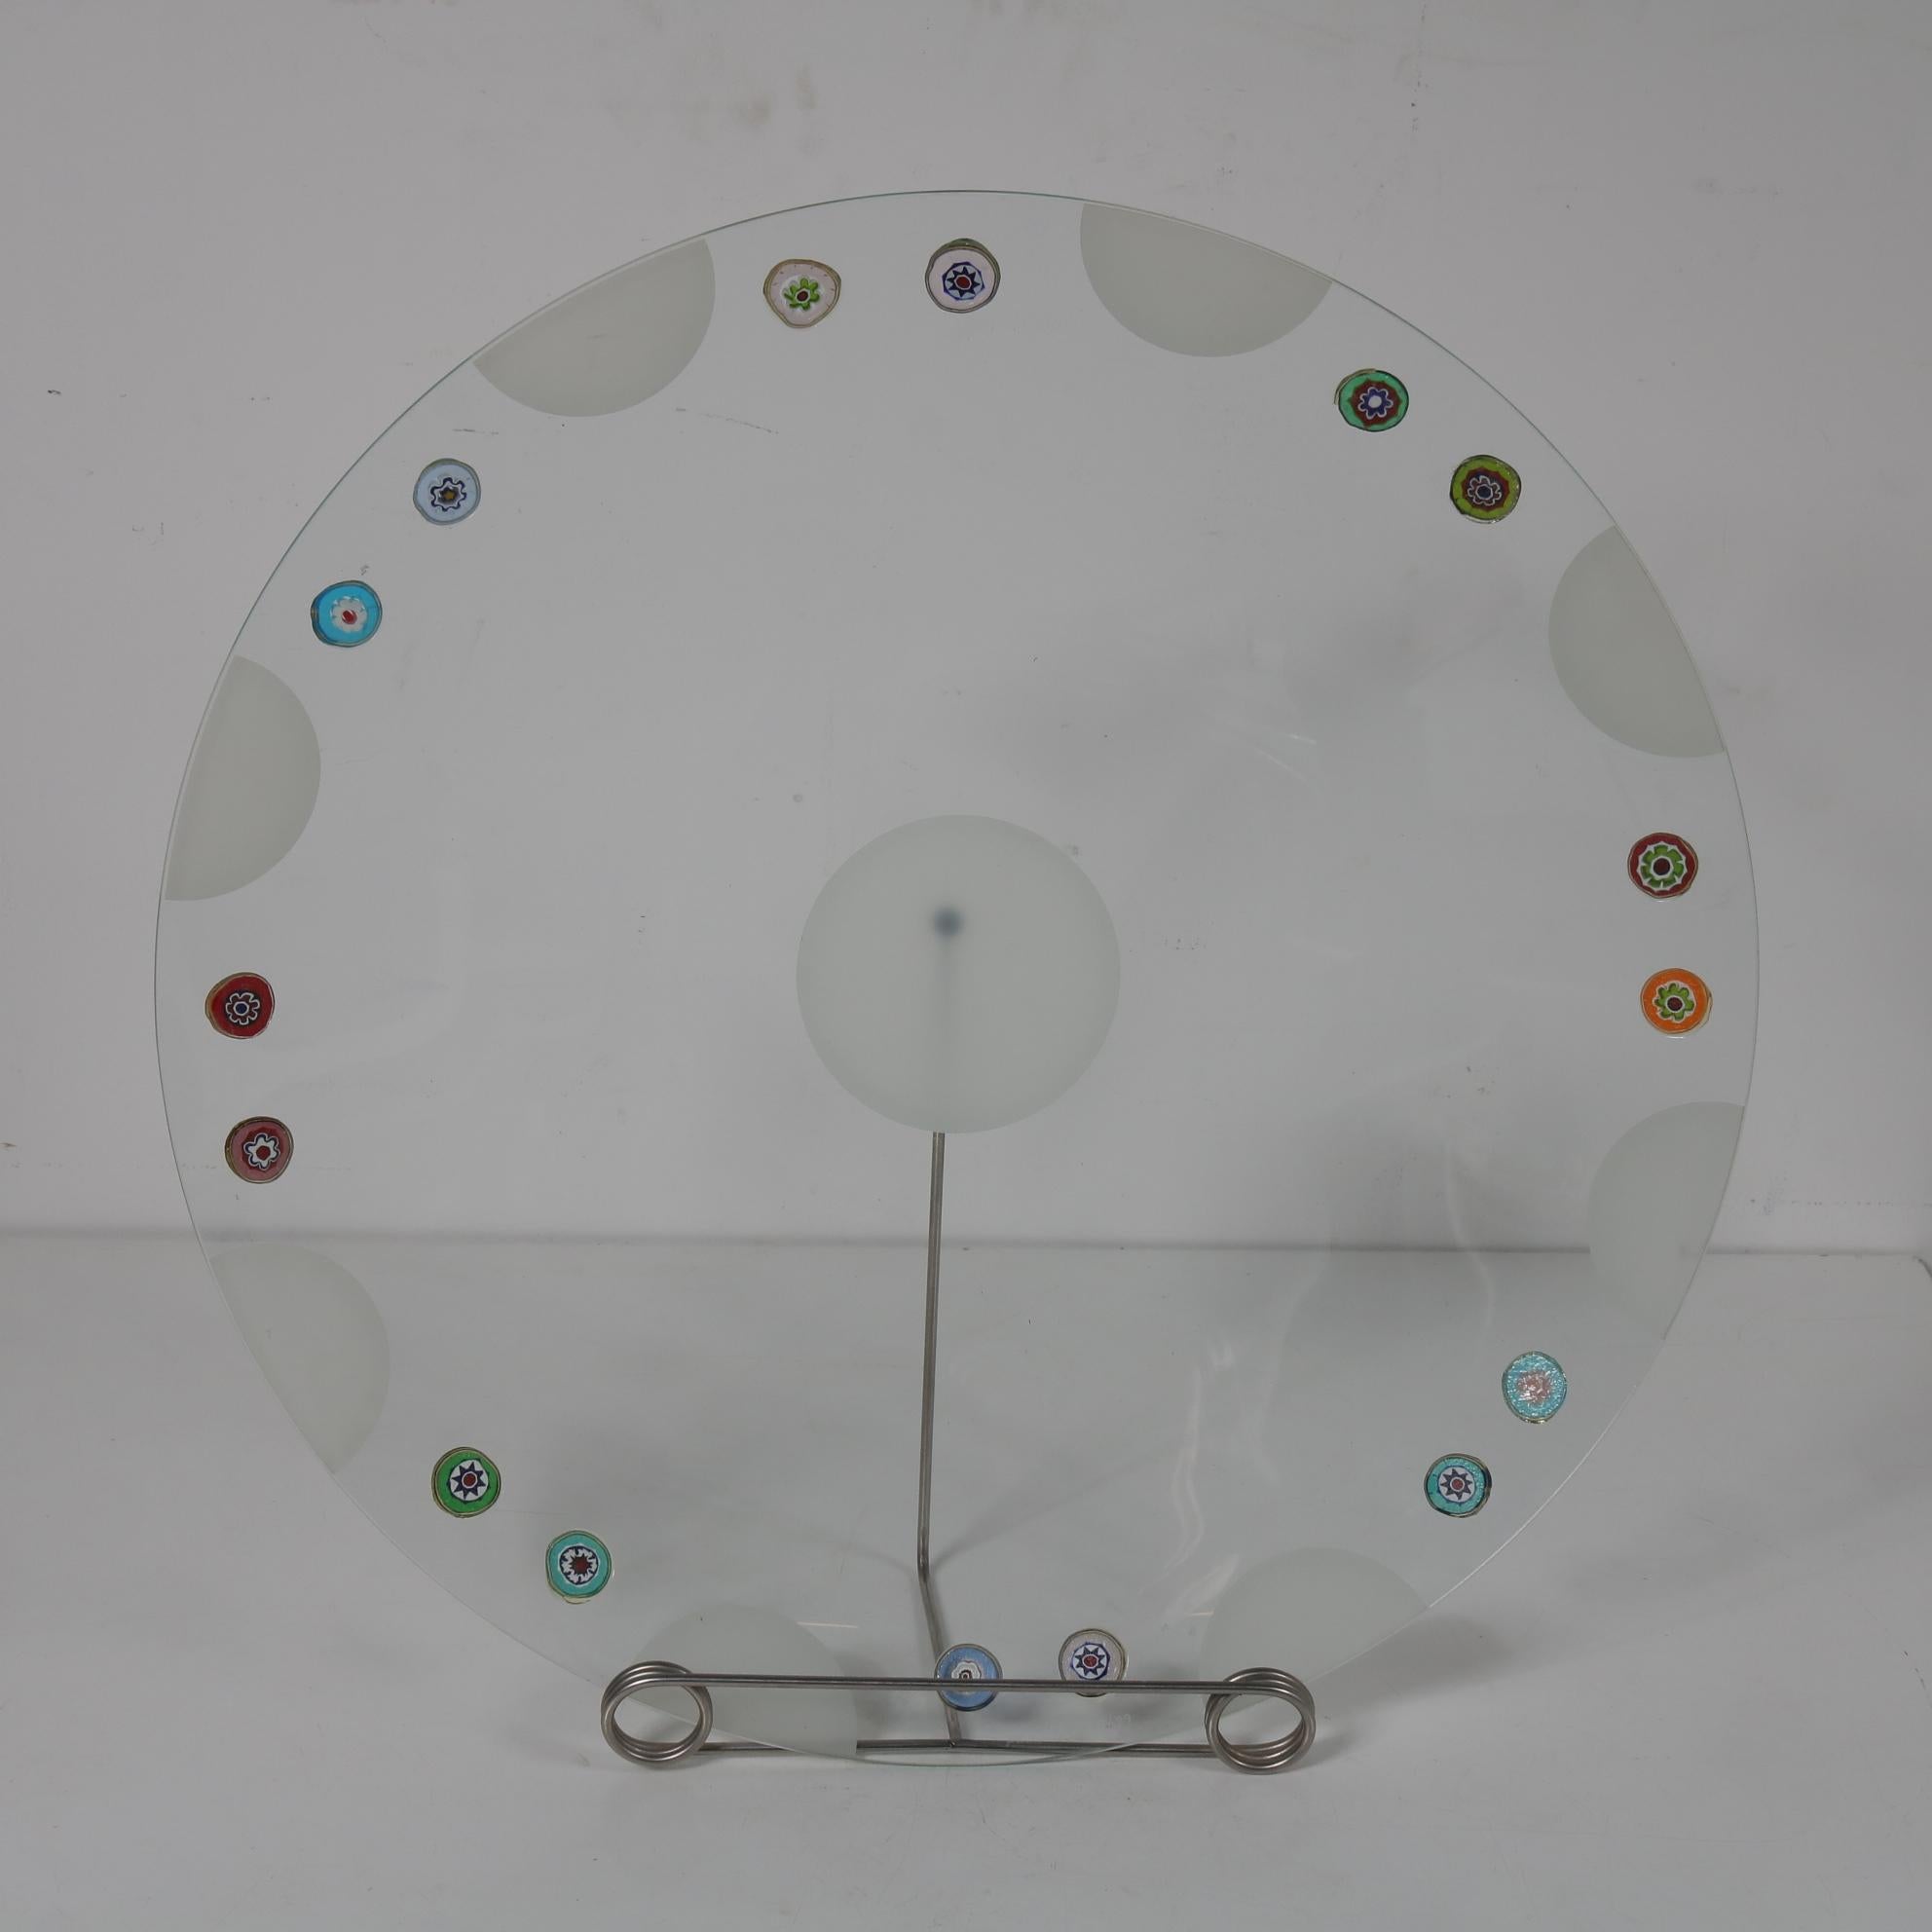 Mid-Century Modern Rare Bruno Munari Glass Plate from 